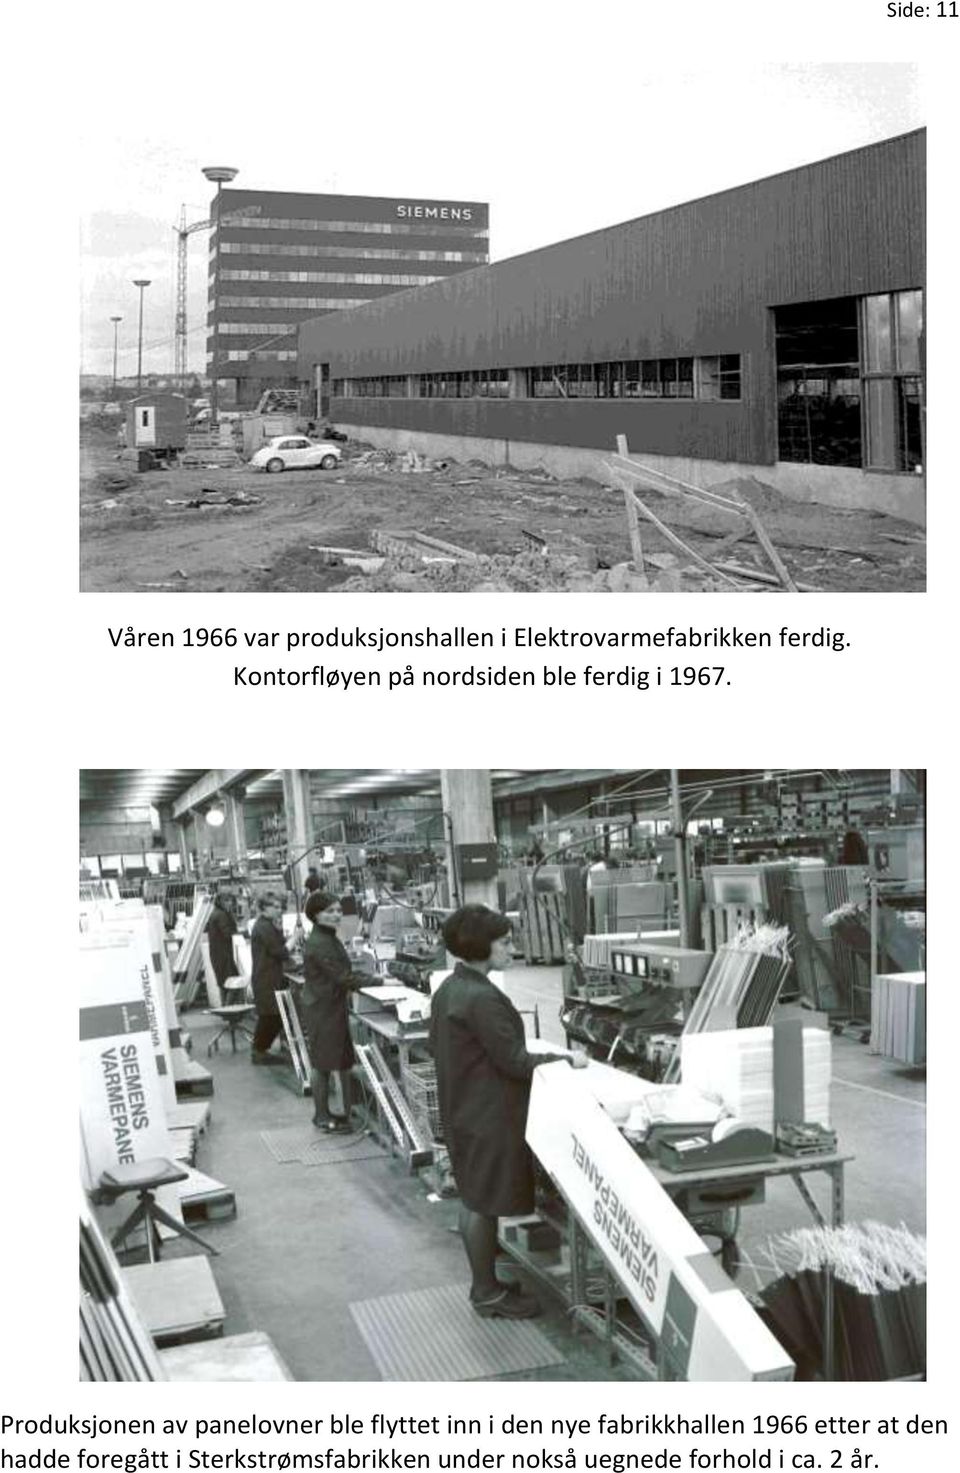 Produksjonen av panelovner ble flyttet inn i den nye fabrikkhallen